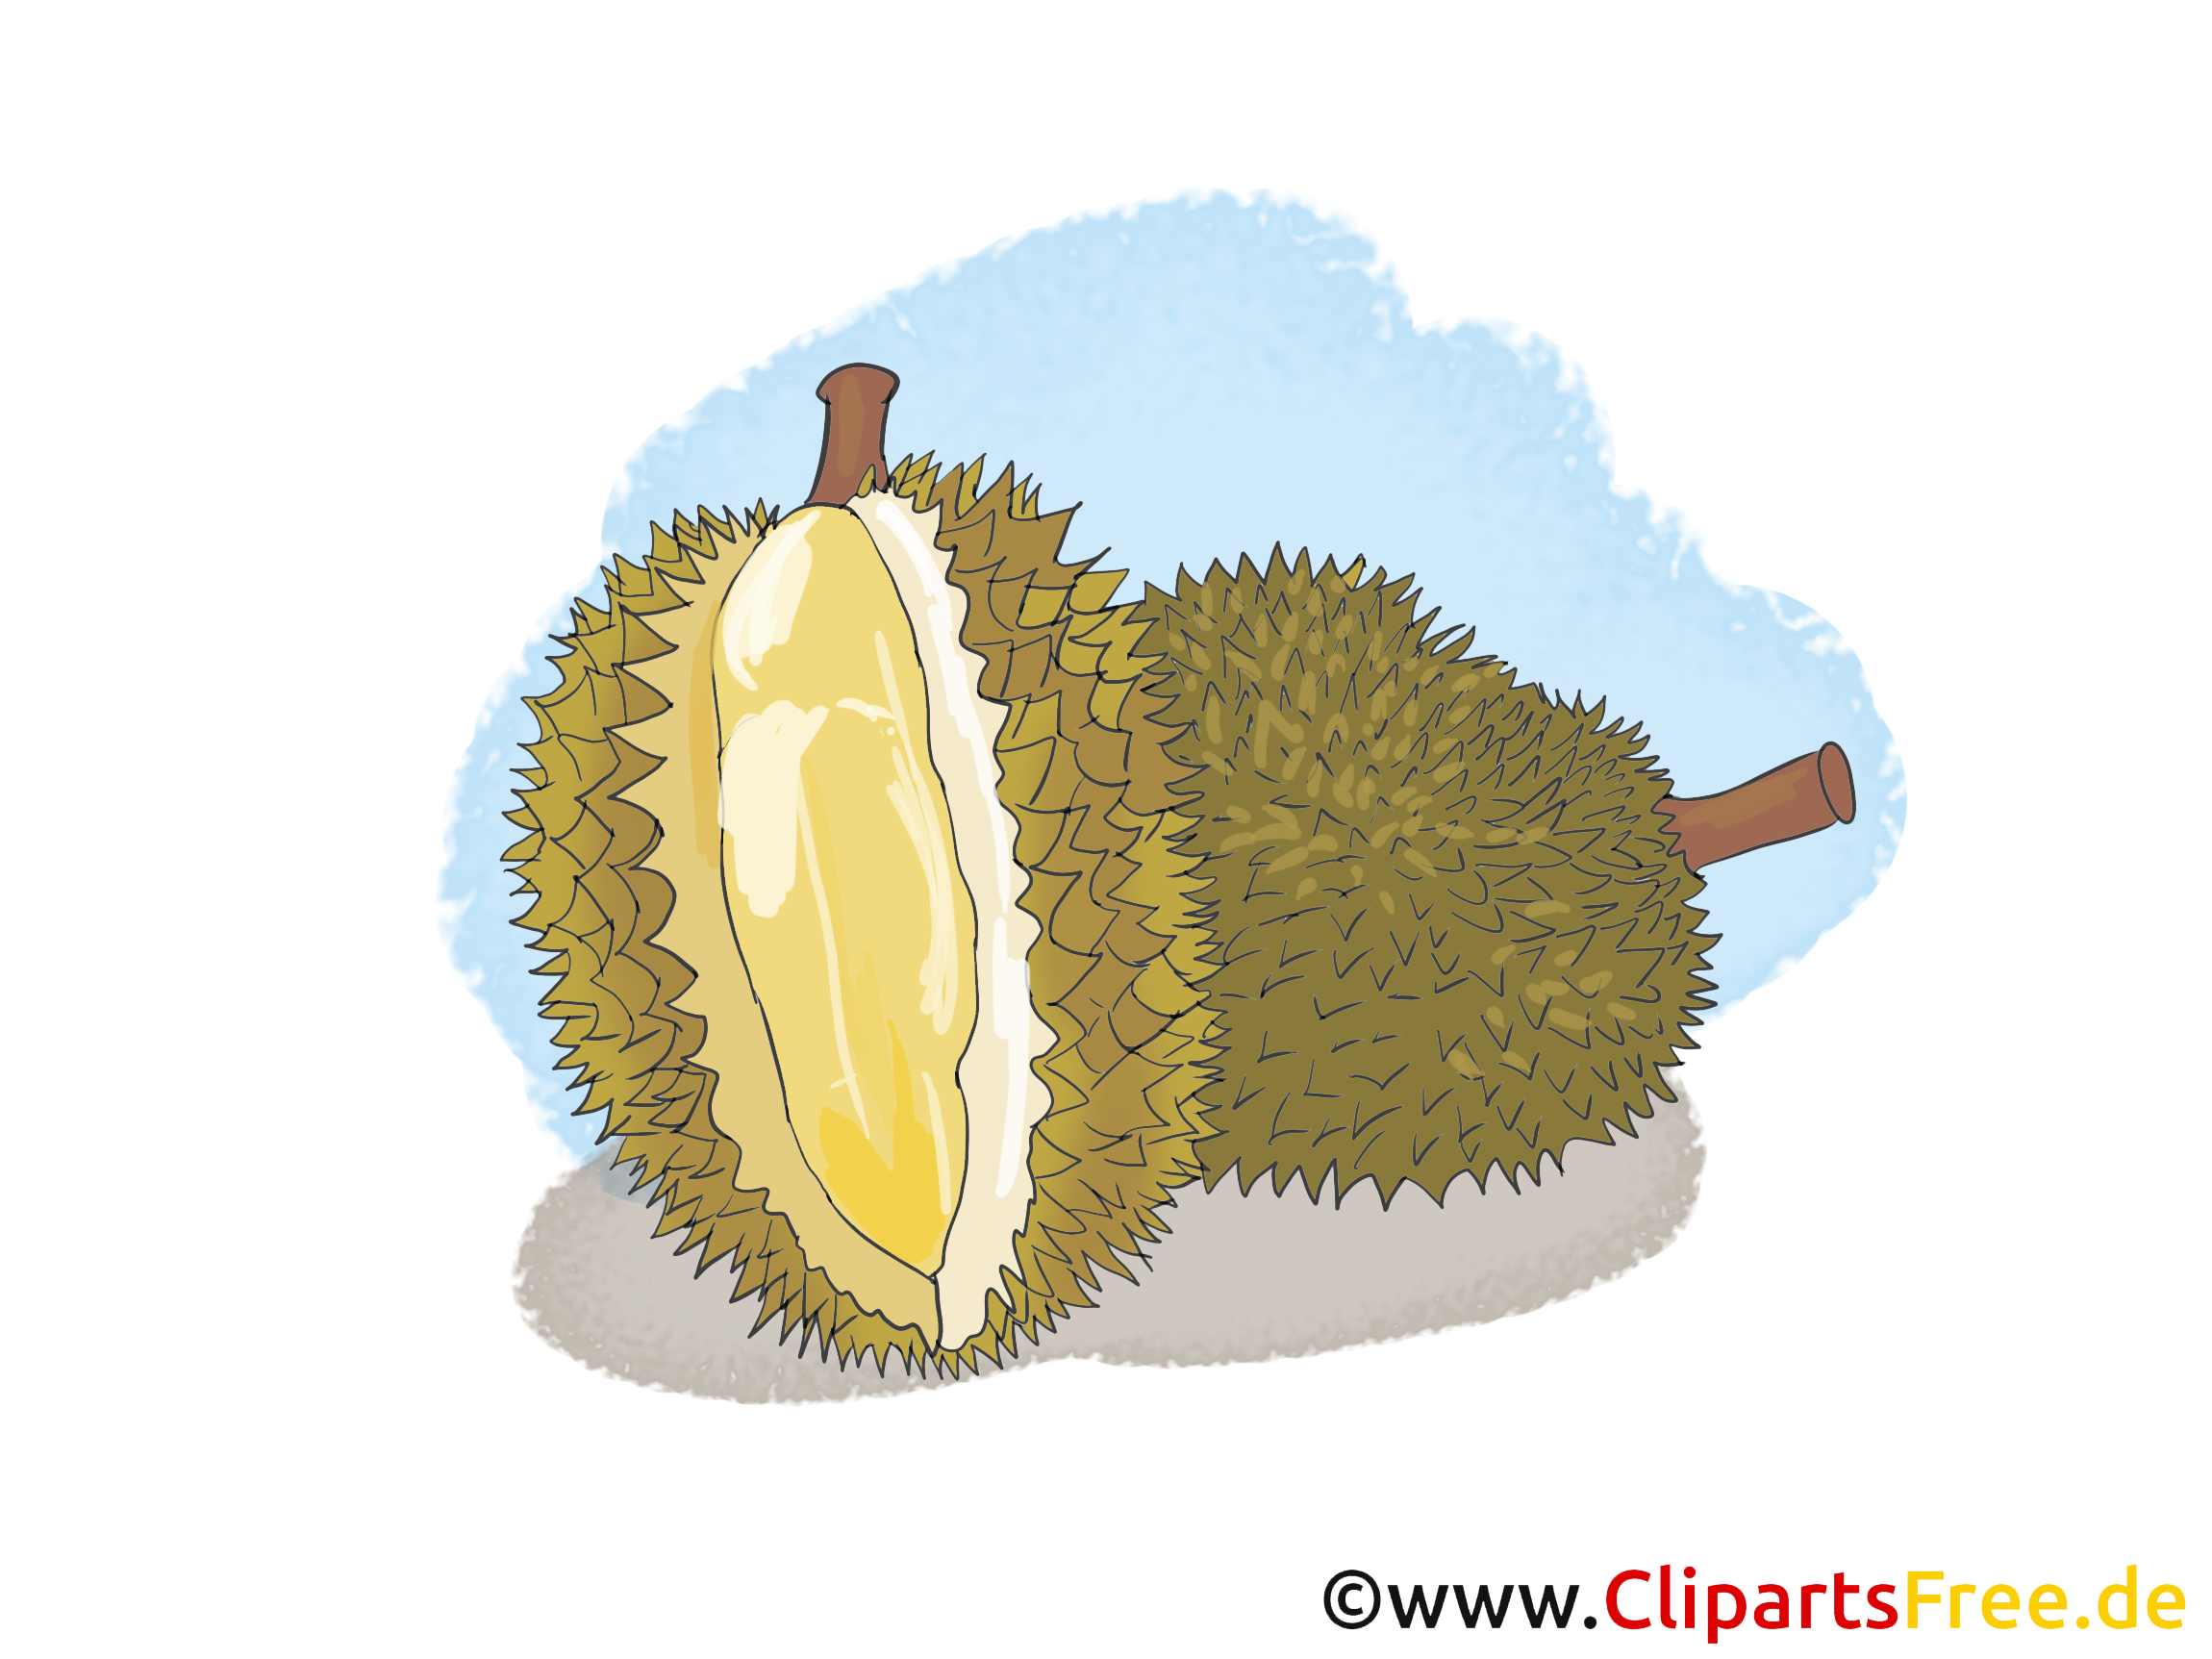 Durian fruits illustration à télécharger gratuite